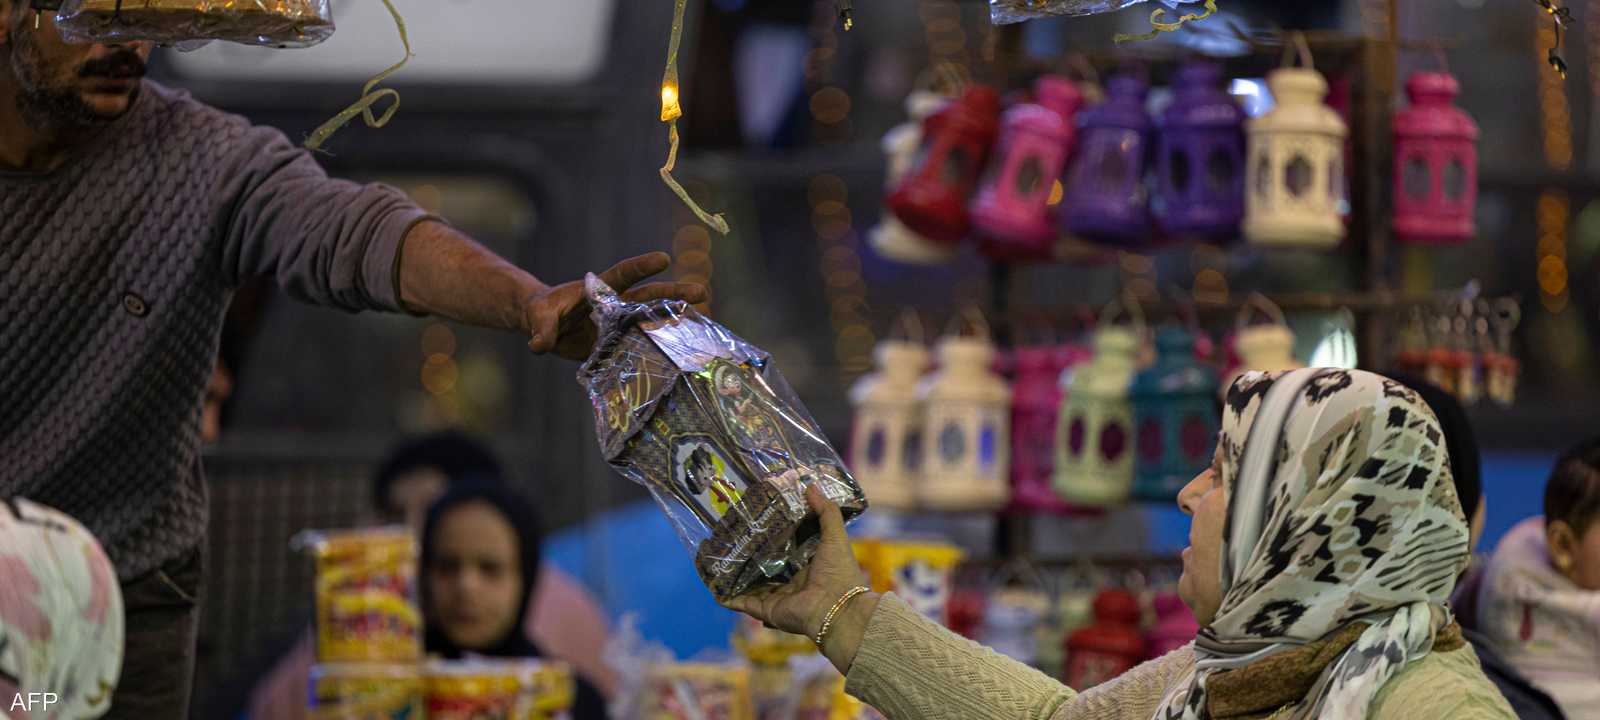 معدل التضخم يربك الأسواق في مصر قبيل شهر رمضان